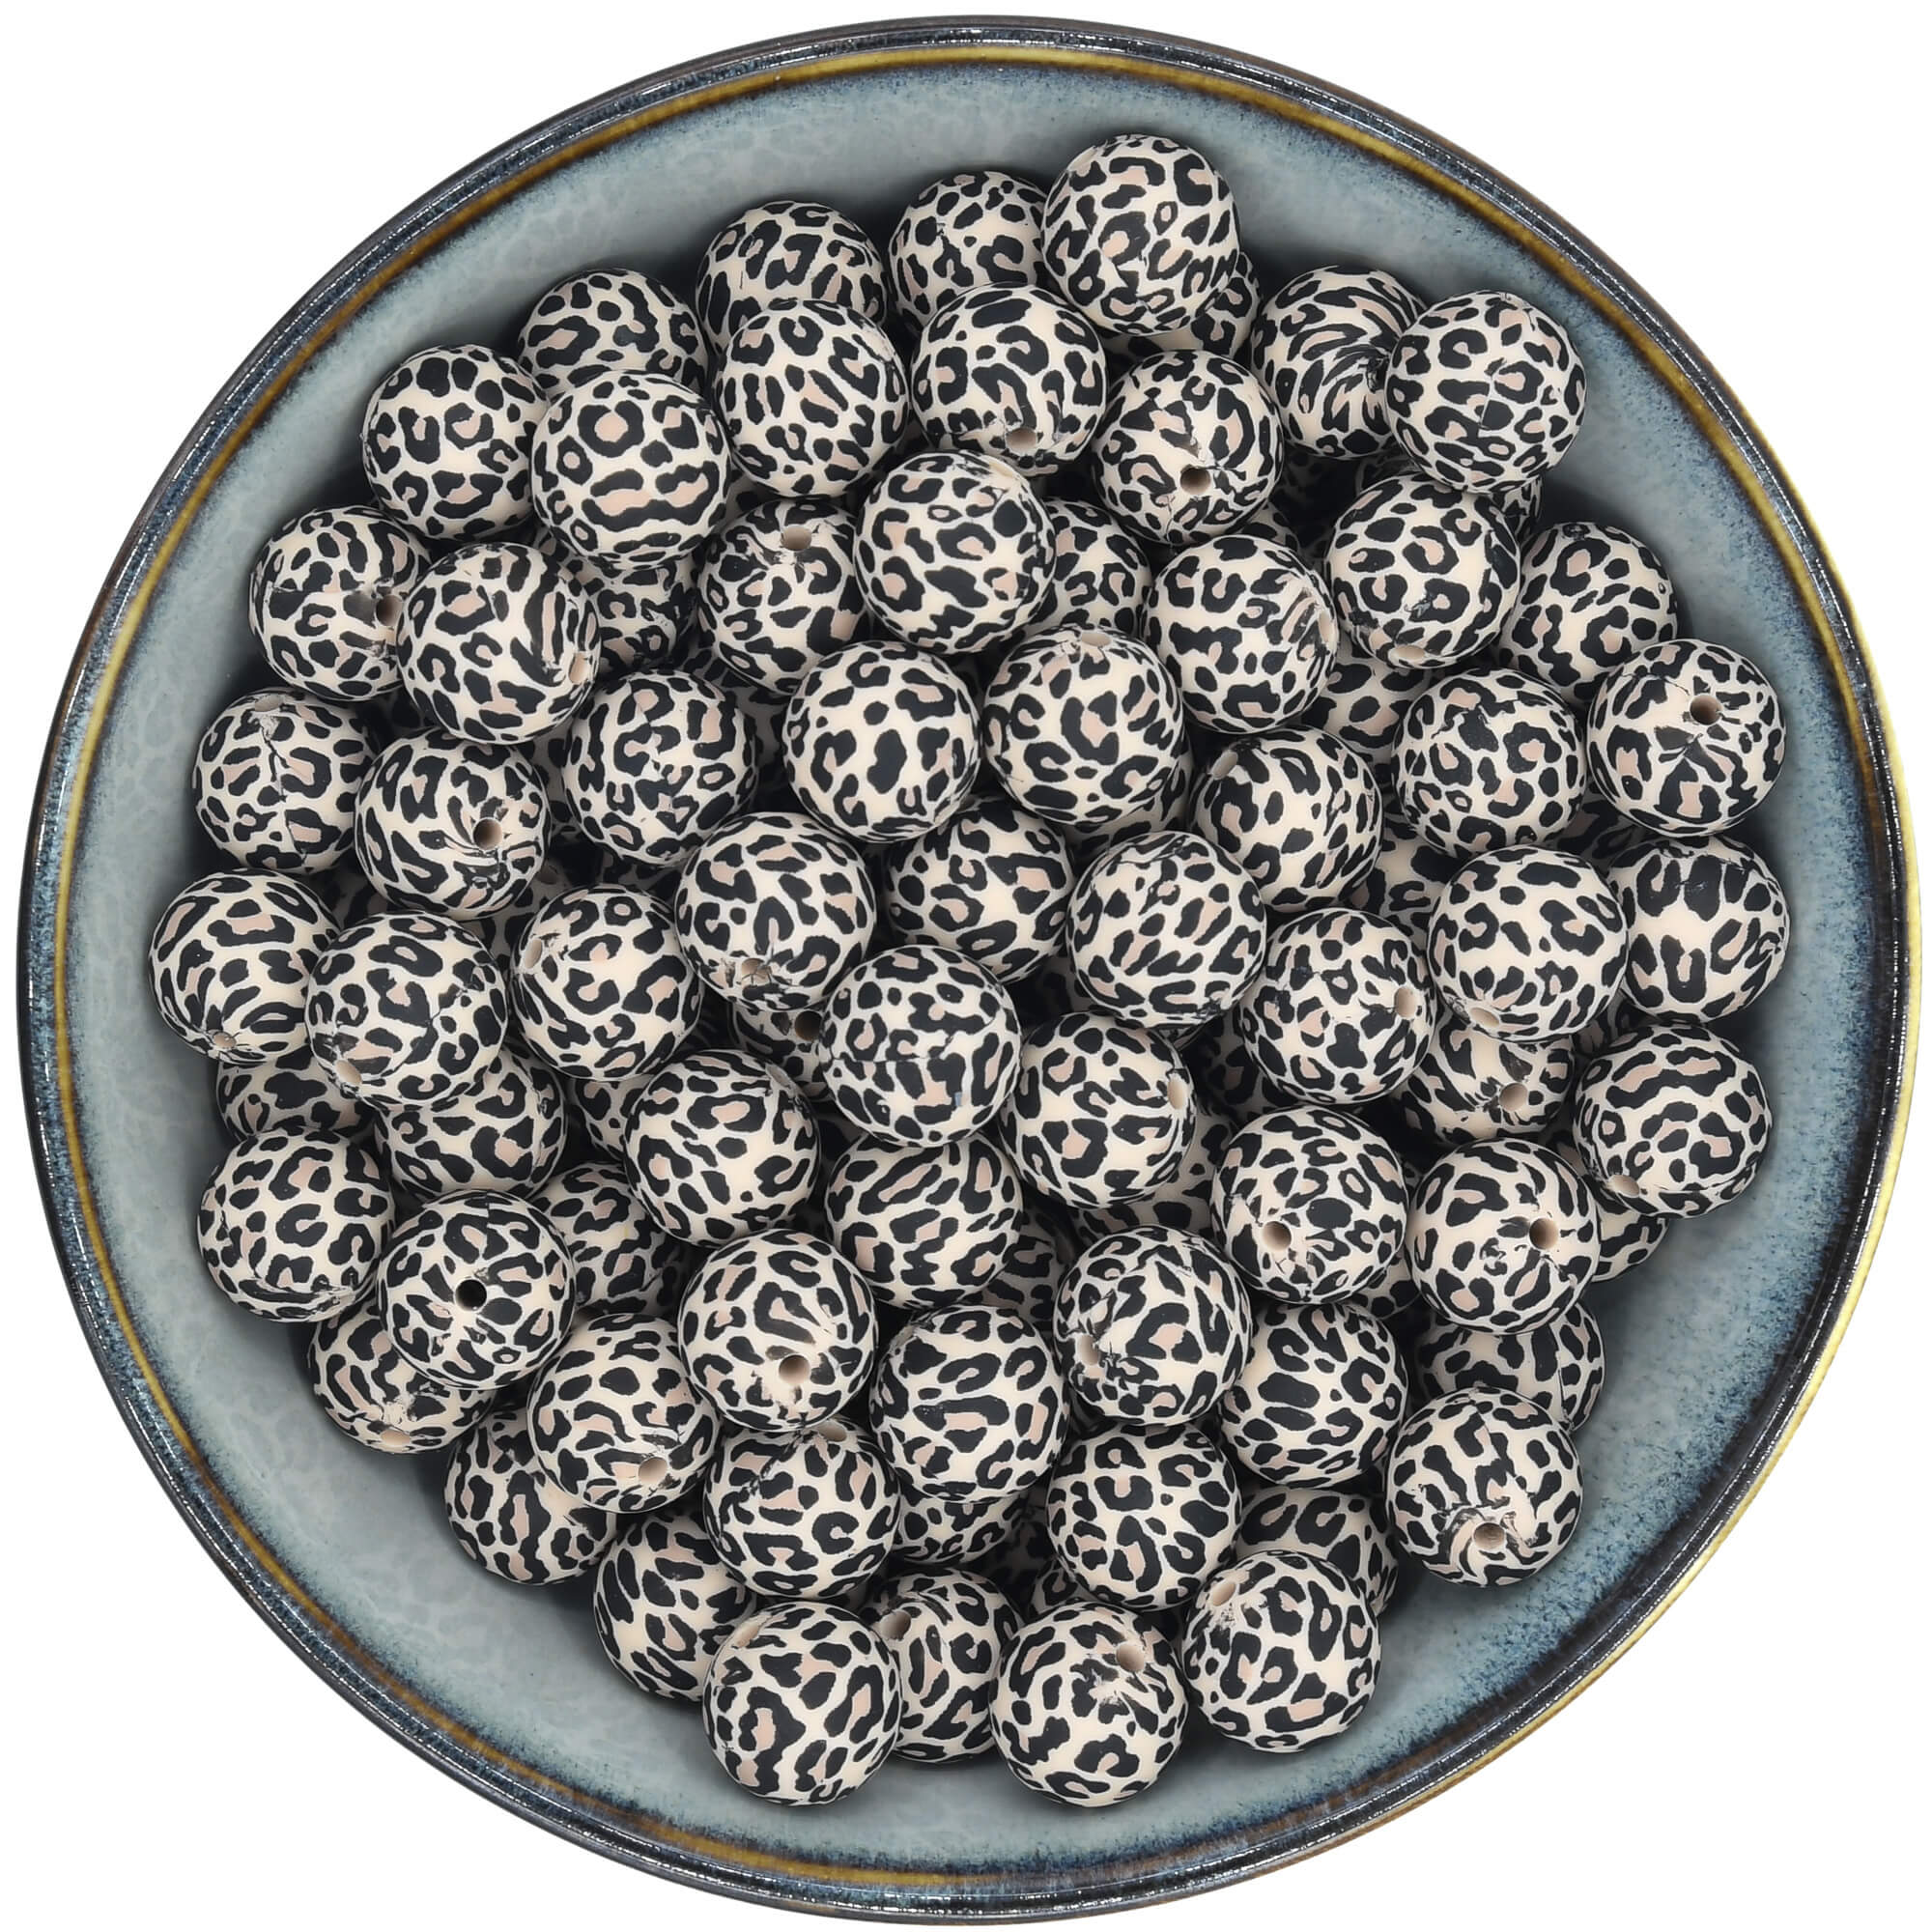 Siliconen Kraal panterprint 15 mm